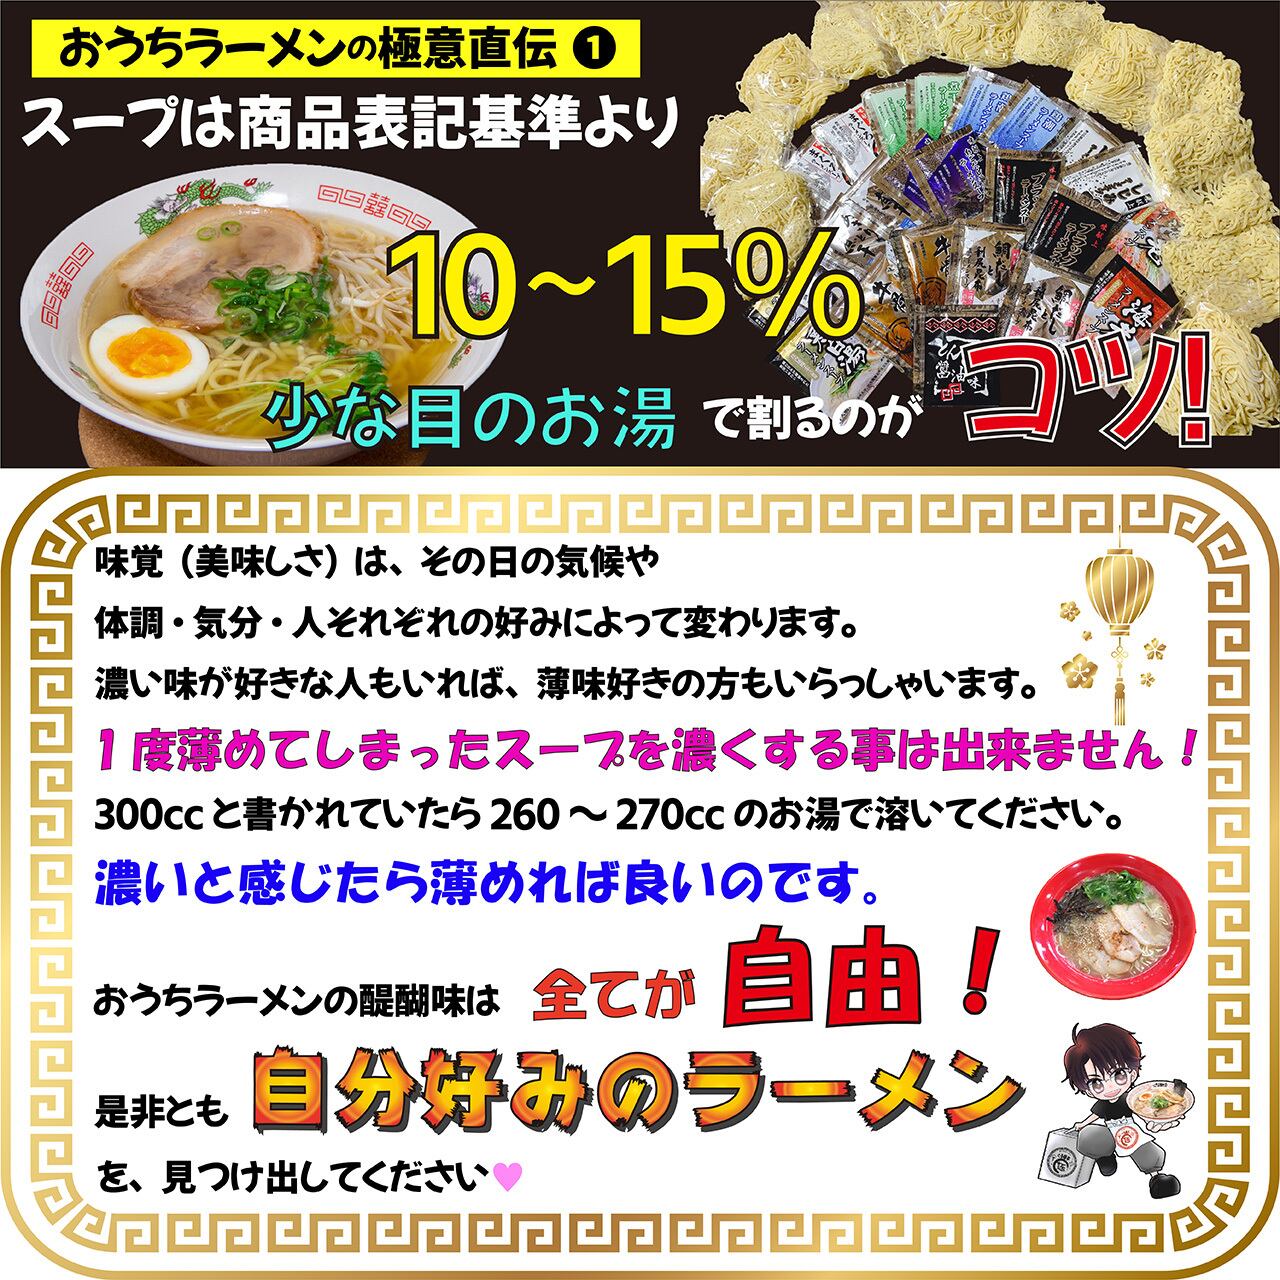 ブラックラーメン 富山 ご当地ラーメン お土産 うますぎ 通販 送料無料 お得 4食 常温保存 生麺